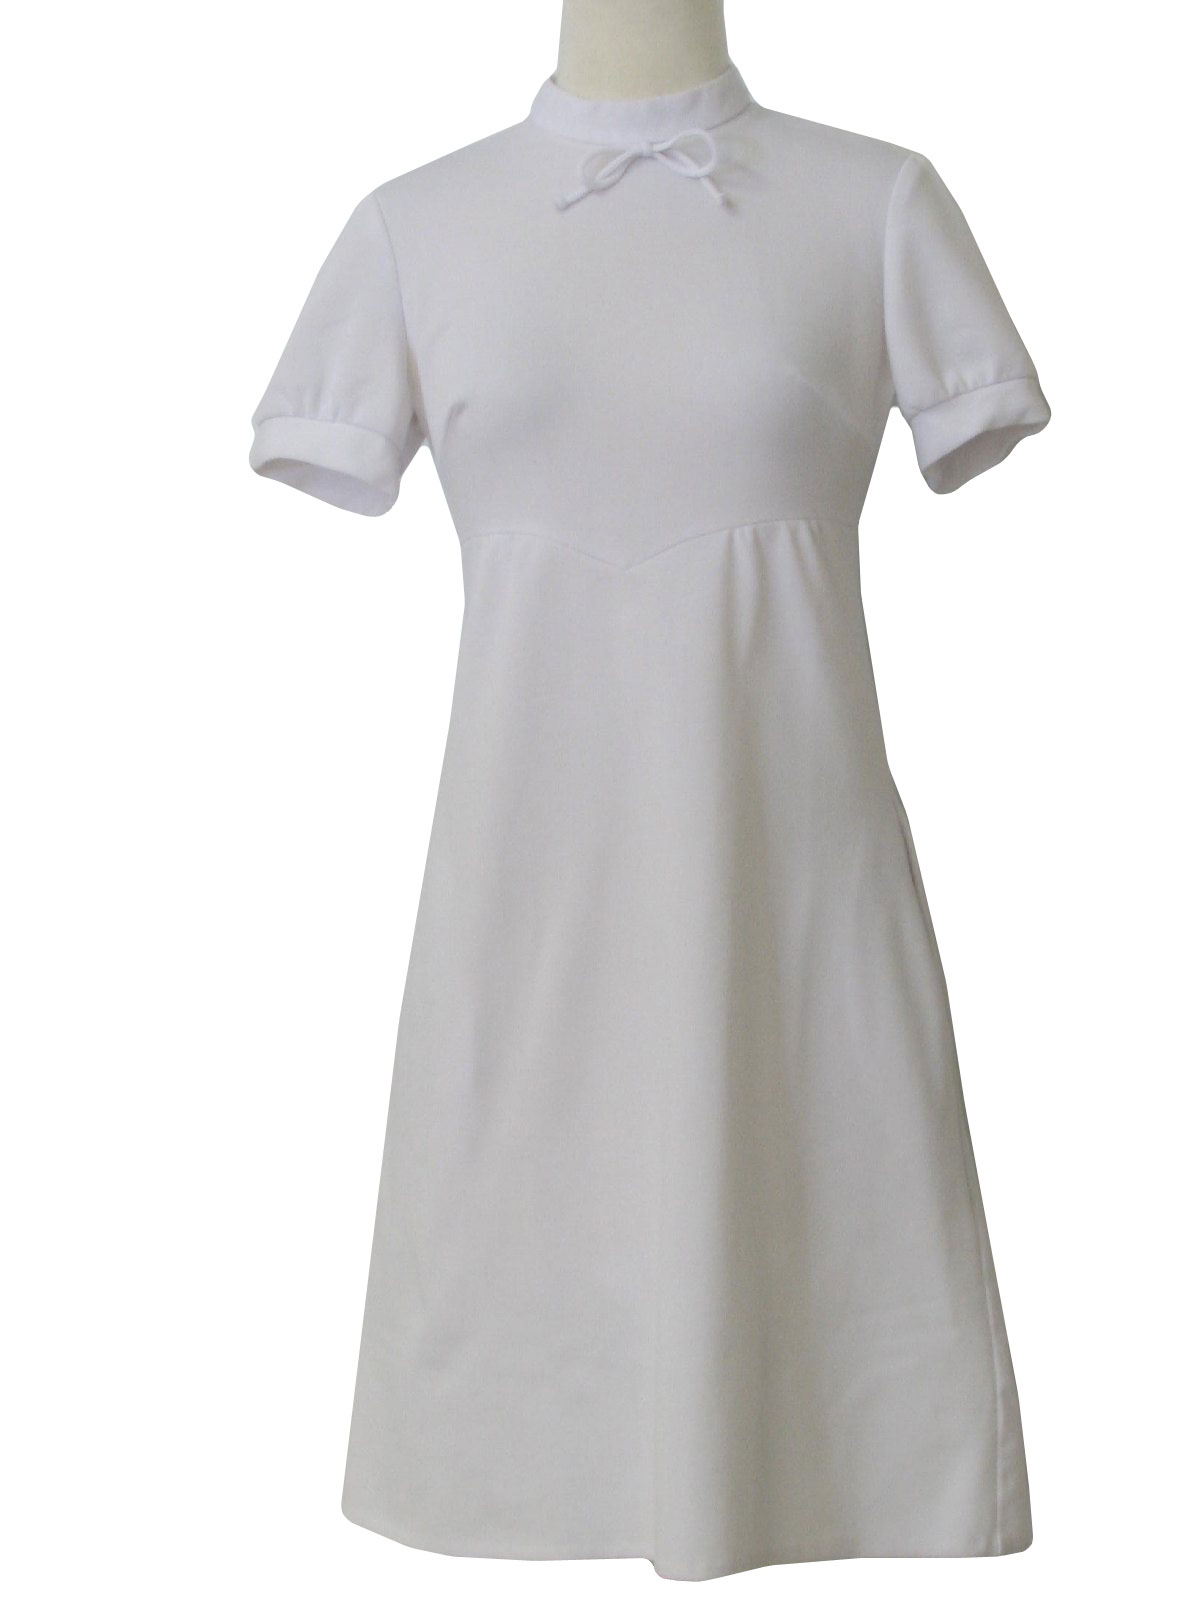 White Uniform Dress - Cocktail Dresses 2016